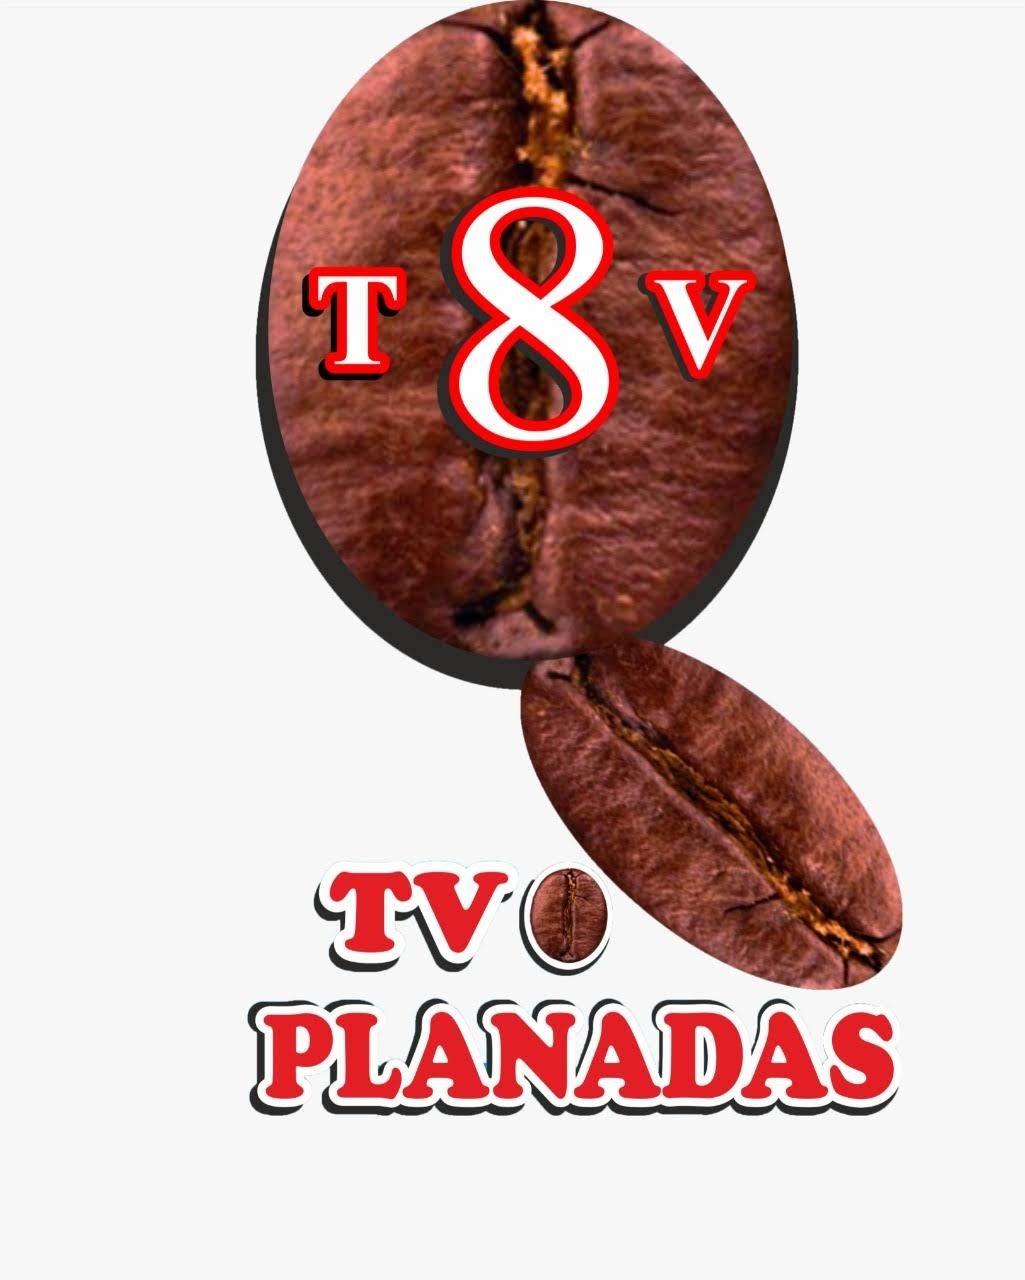 Canal de tv comunitario, del casco urbano de Planadas Tolima.